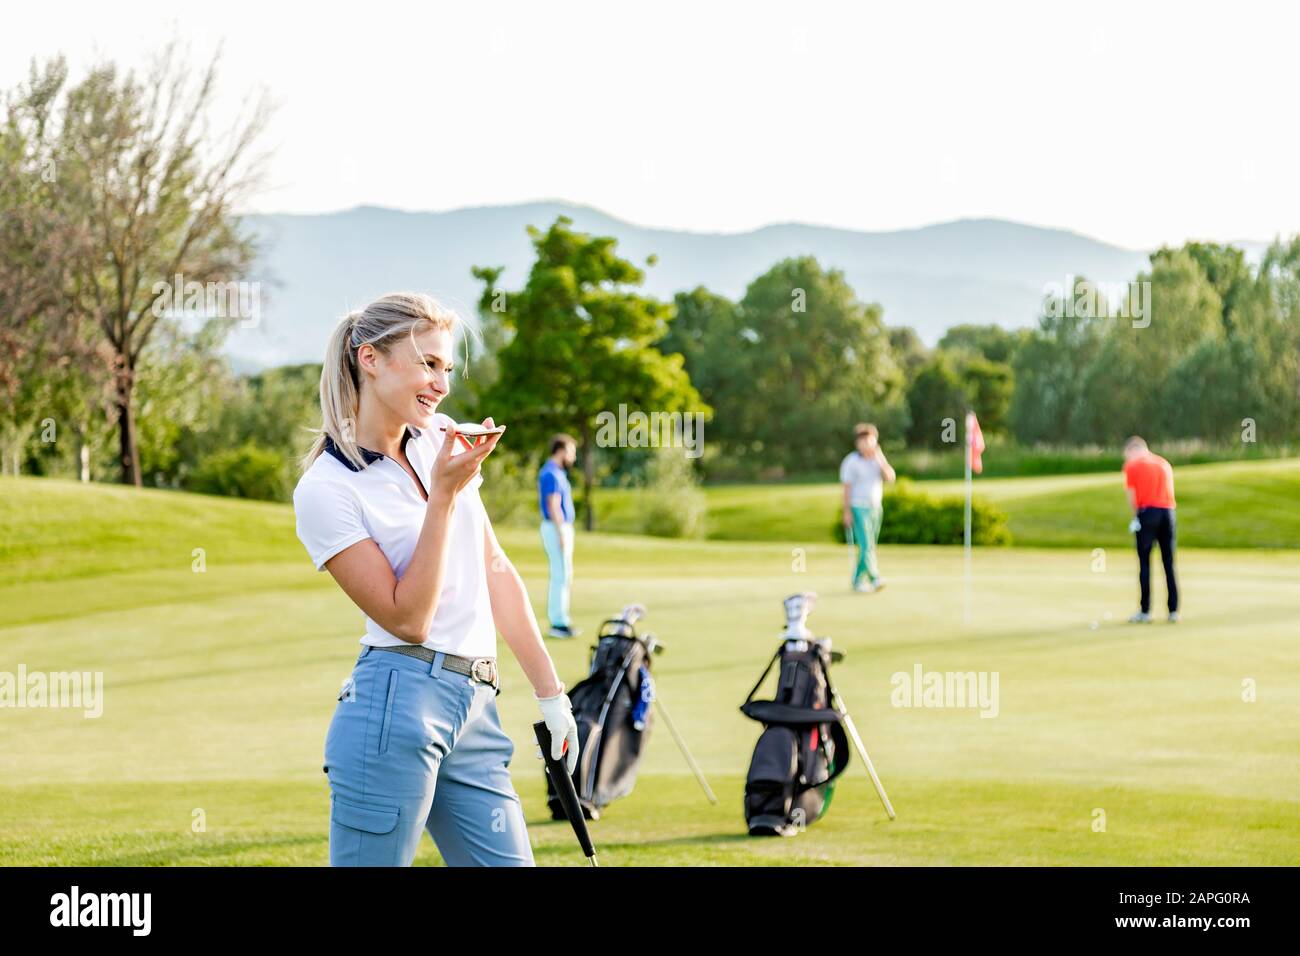 Mujer hablando en smartphone en el campo de golf, amigos jugando golf en el fondo Foto de stock